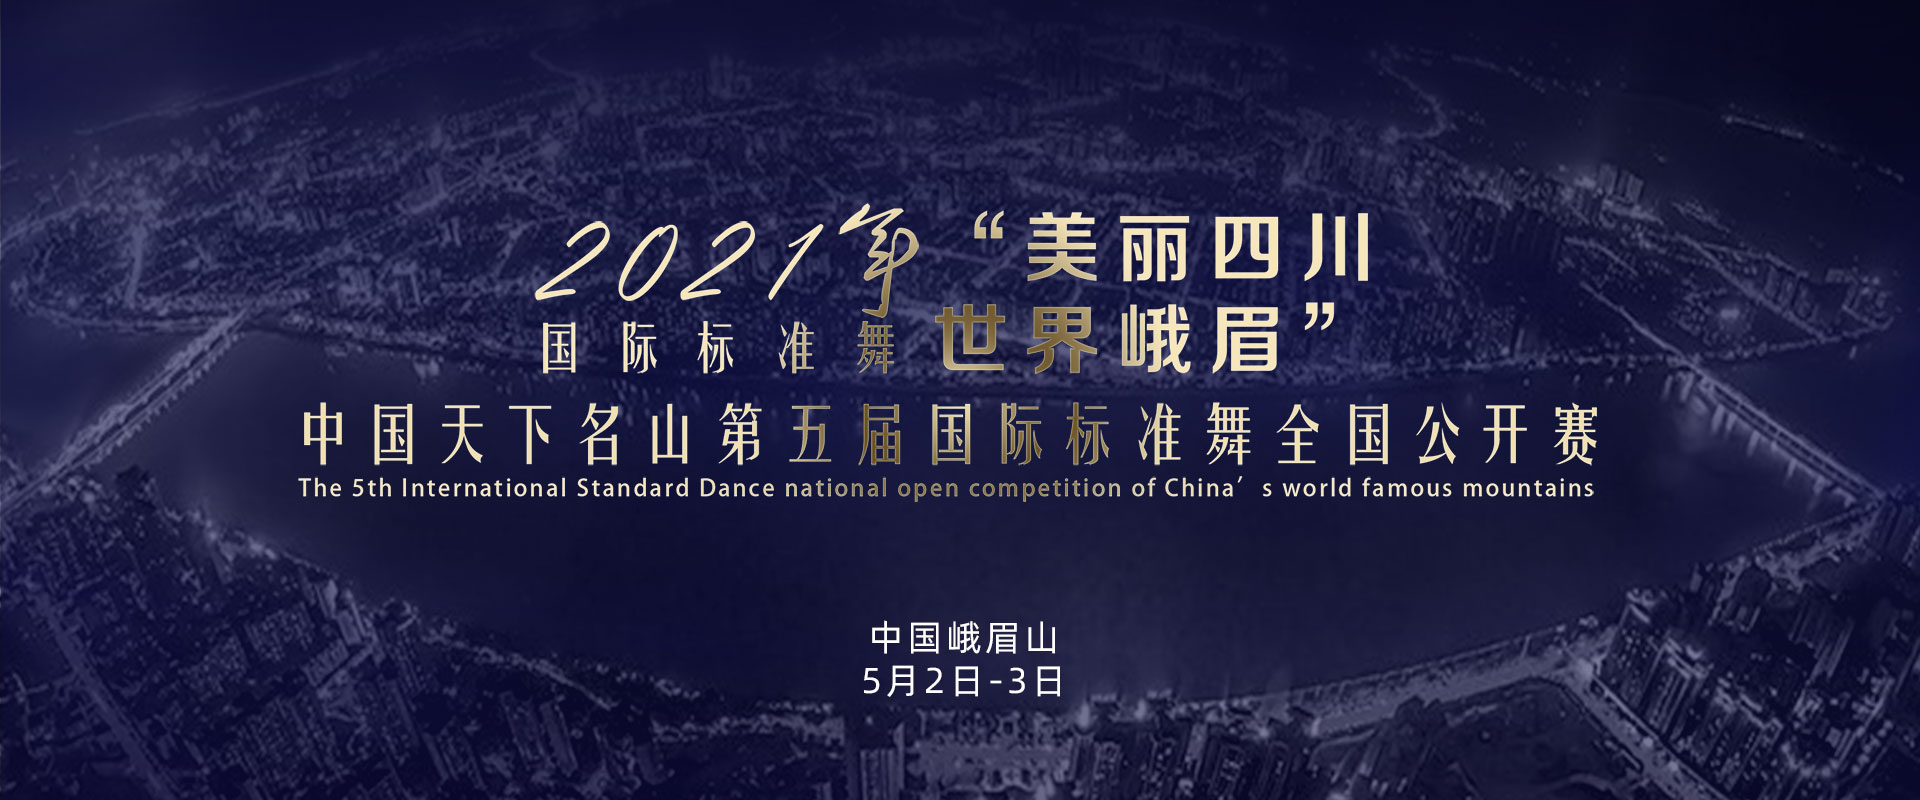 2021年國標標準舞比賽預告